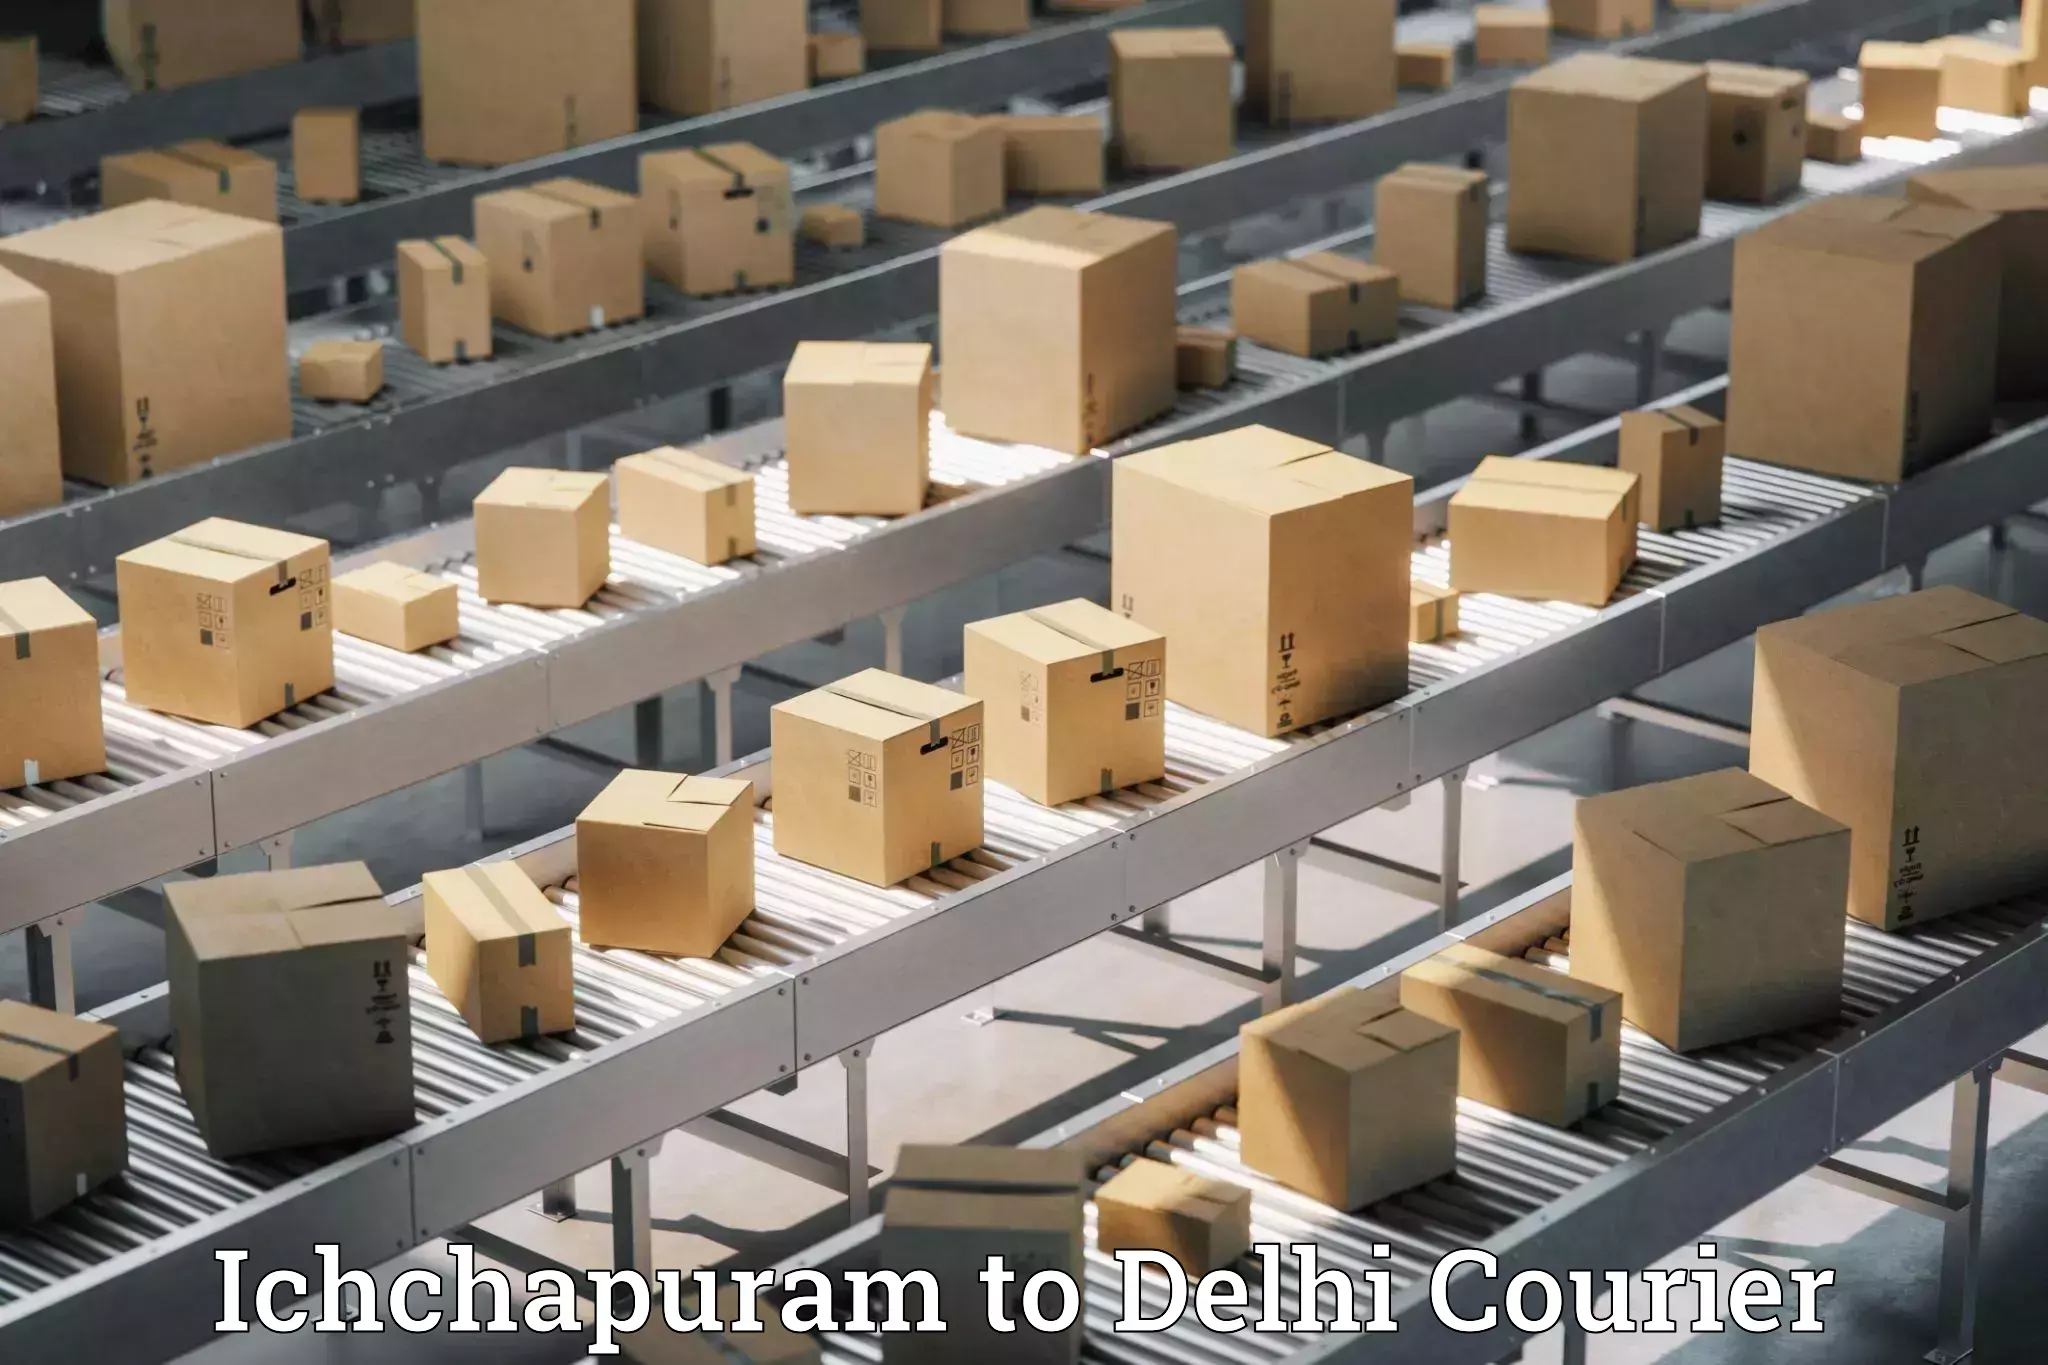 Customer-oriented courier services Ichchapuram to Ashok Vihar